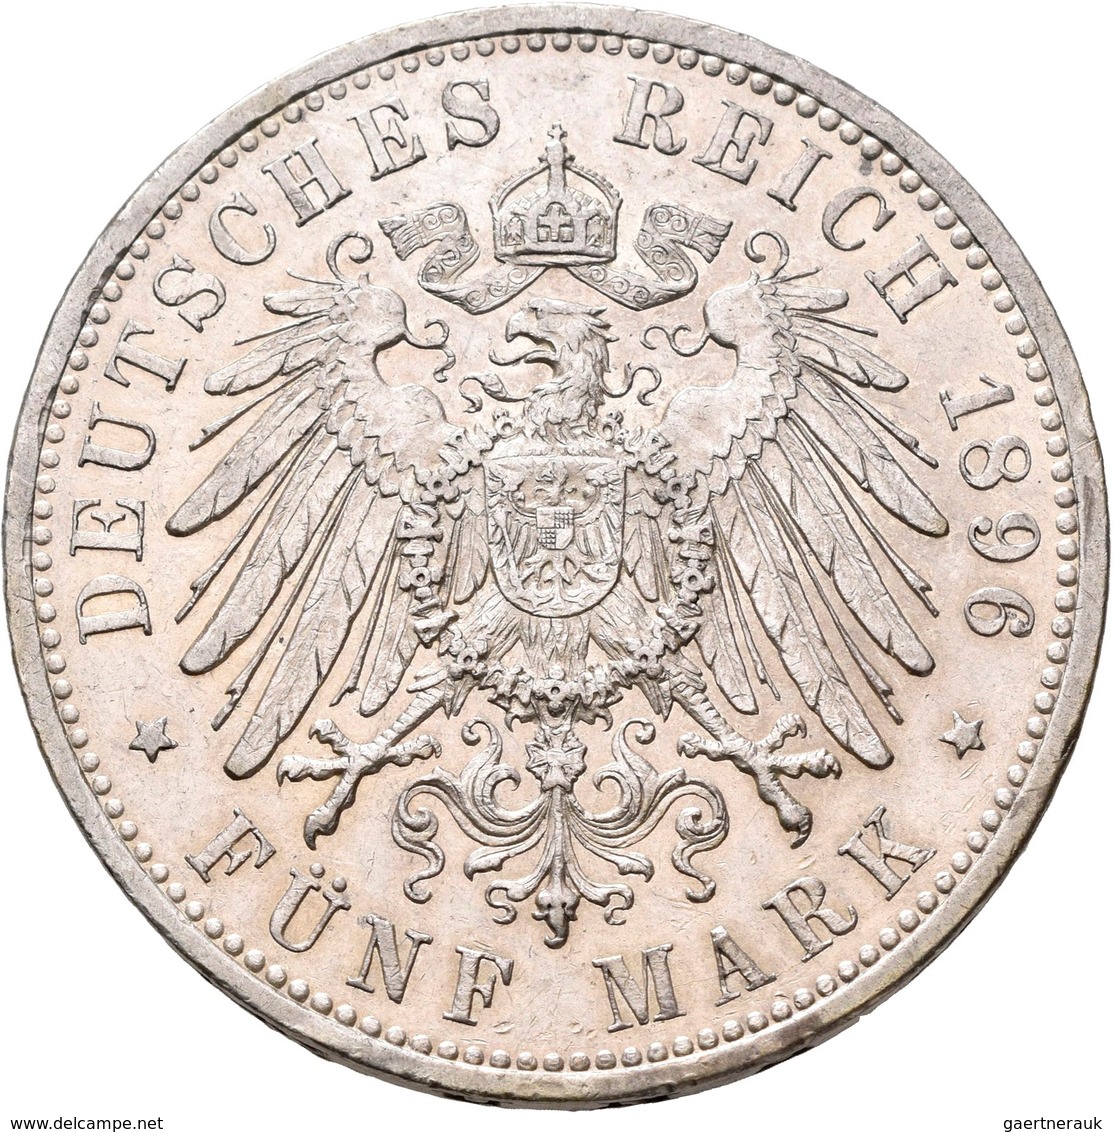 Anhalt: Friedrich II. 1904-1918: 5 Mark 1896, Zum 25-jährigen Regierungsjubiläum, Auflage 10 Tsd. Ex - Taler Et Doppeltaler